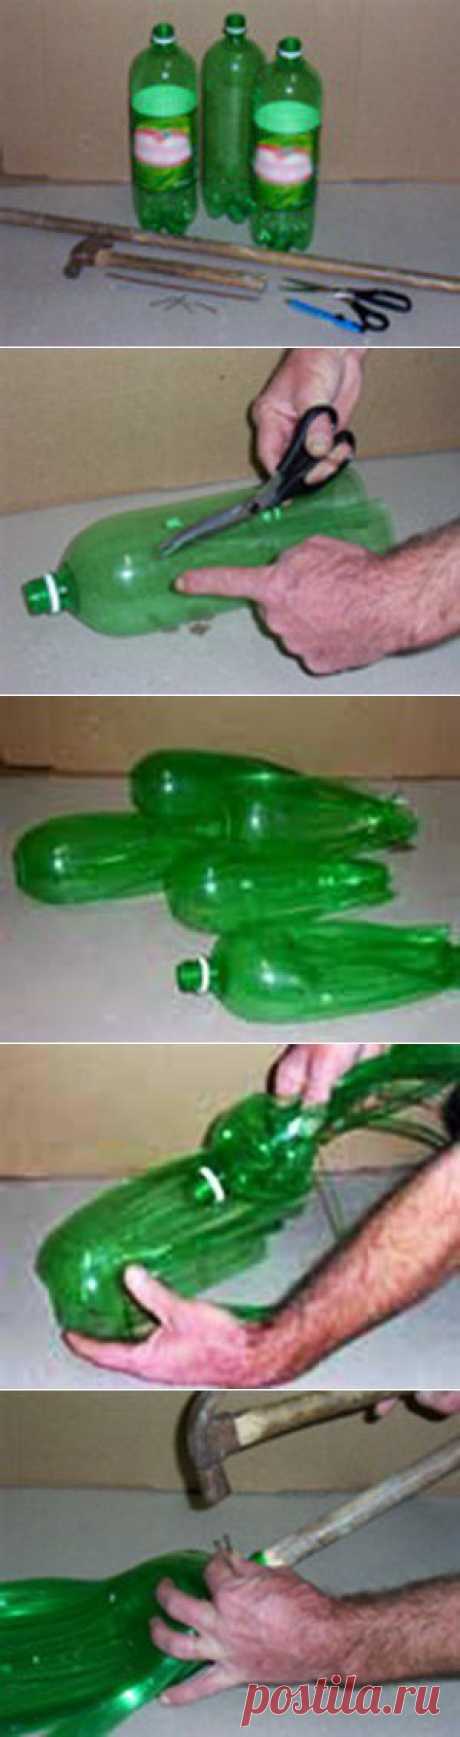 Метла из пластиковых бутылок мастер класс.